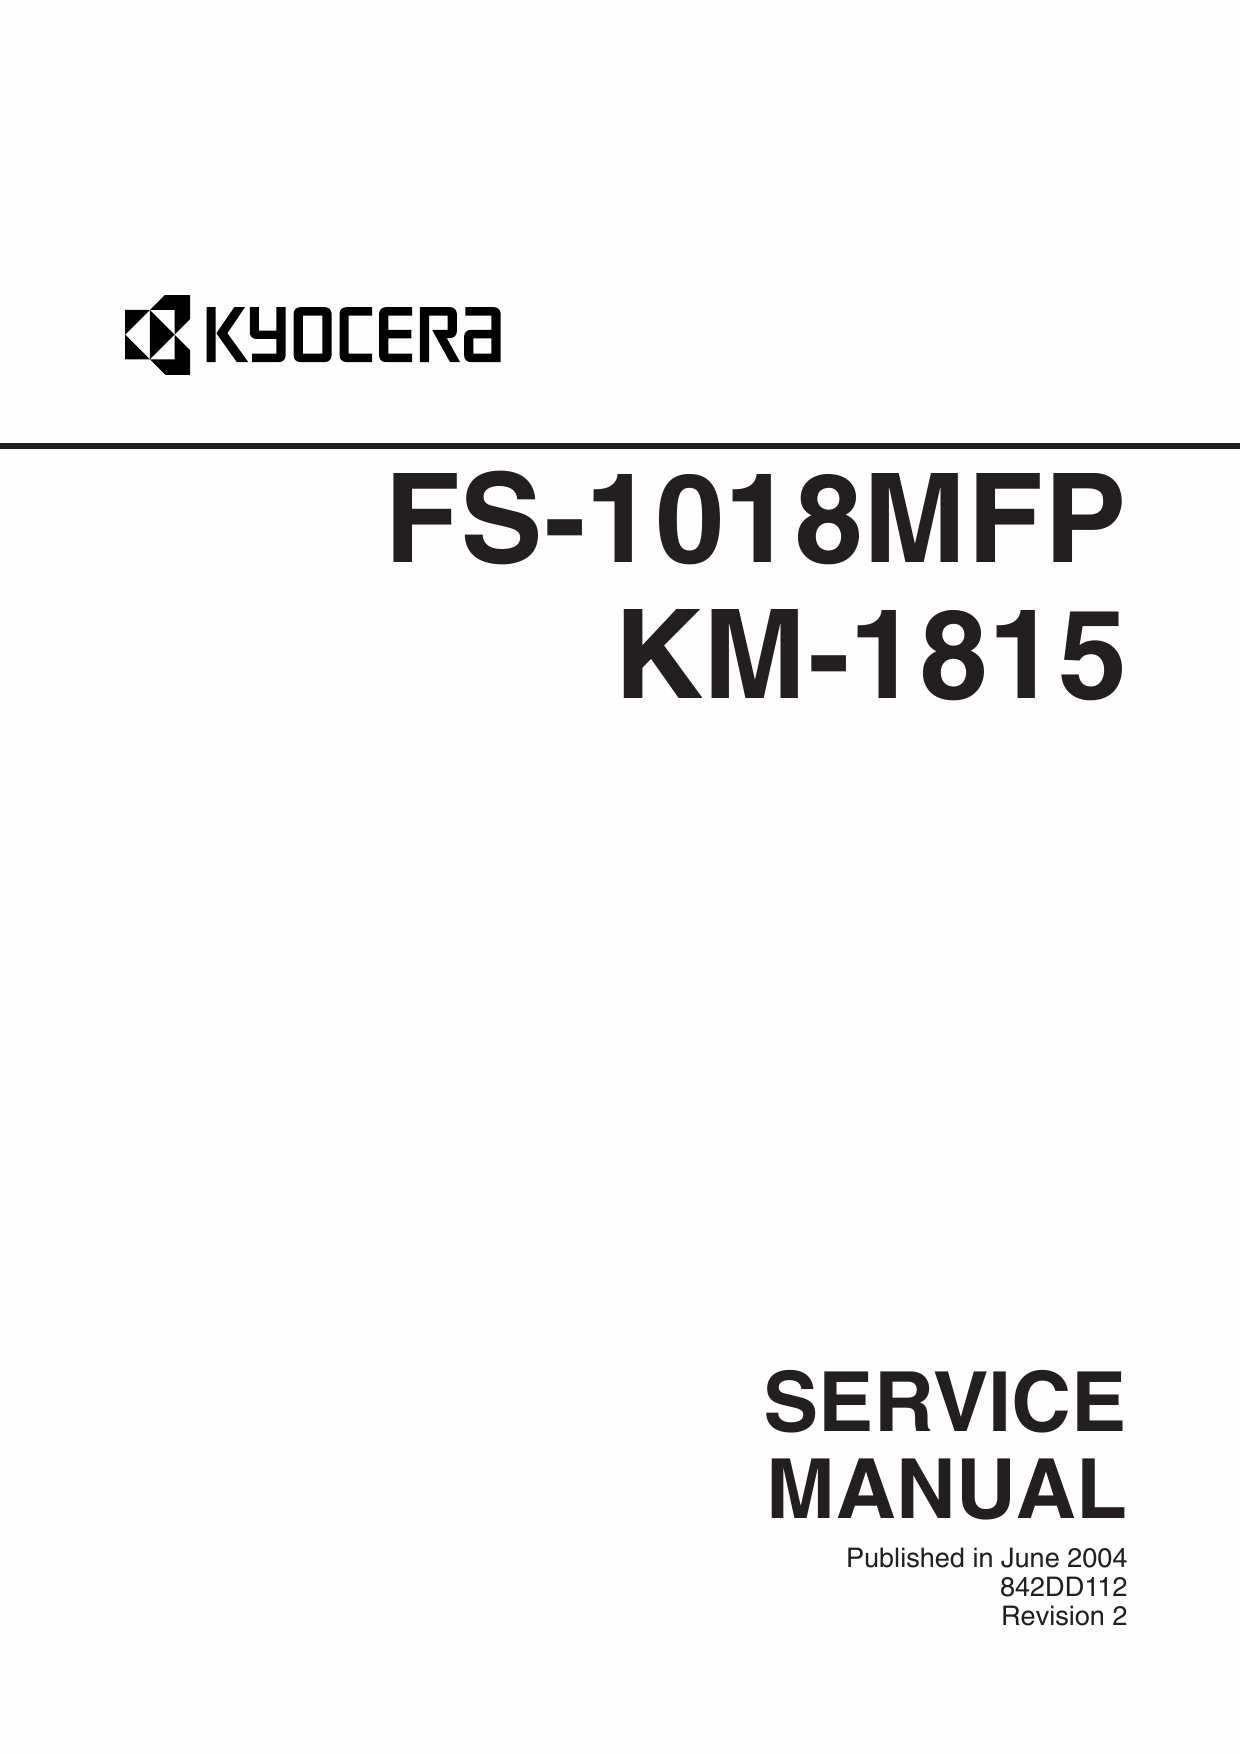 KYOCERA MFP FS-1018MFP KM-1815 Service Manual-1